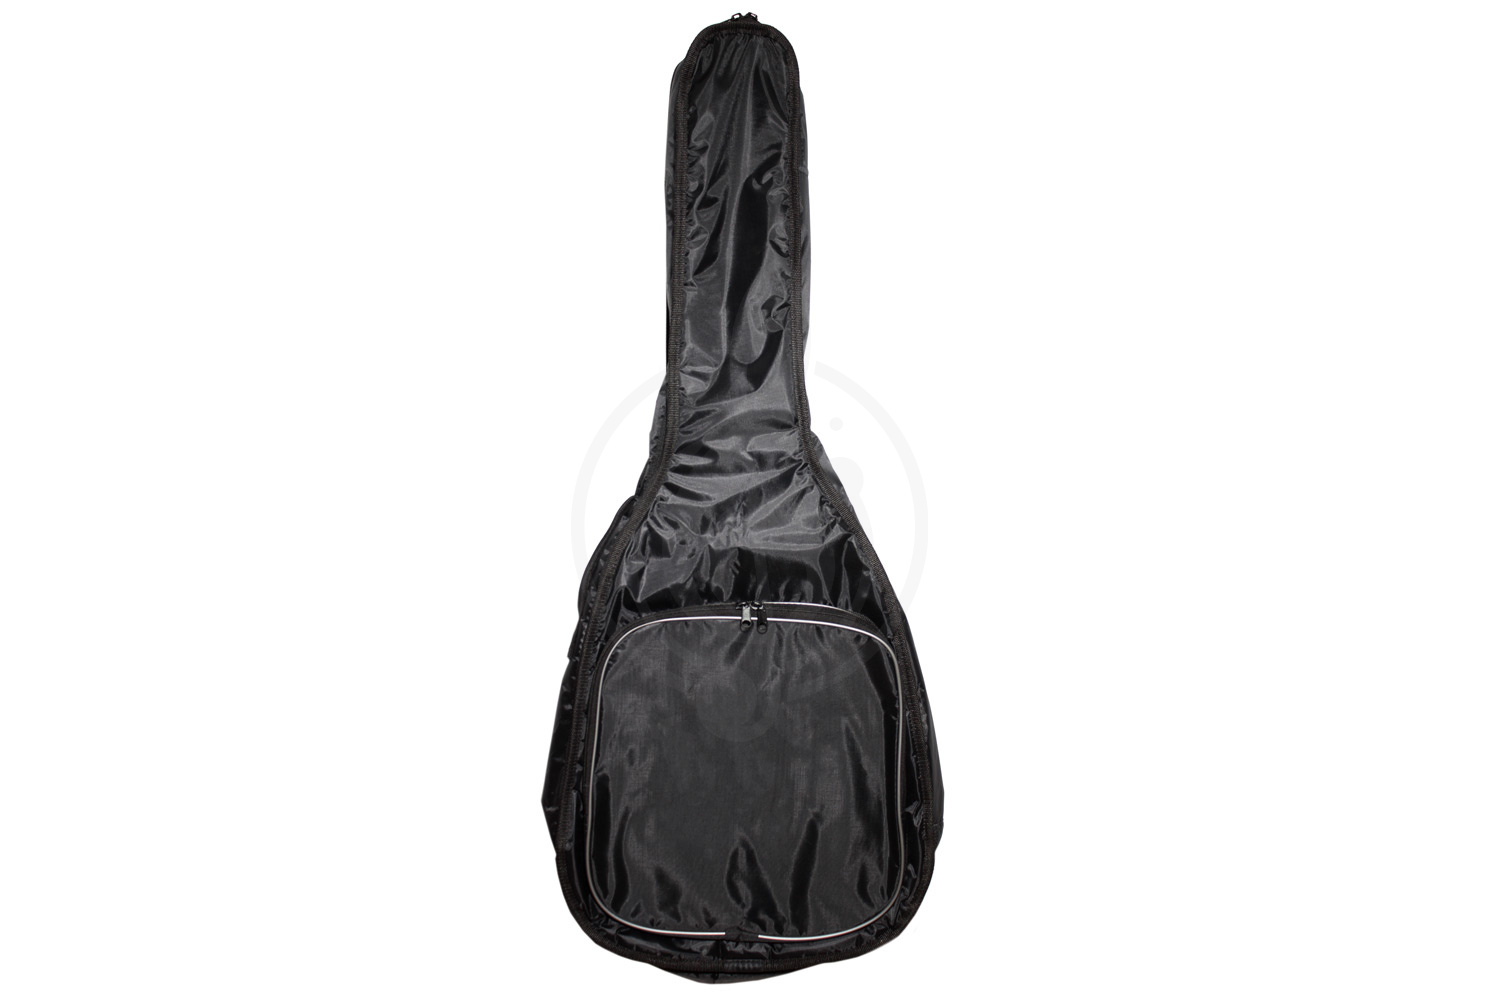 Чехол для акустической гитары Чехлы для акустических гитар Magic Music Bag ЧГ-В Чехол для акустических гитар вестерн, утепленный, пенополиэтилен, пластик, поролон-10 мм ЧГ-В - фото 2